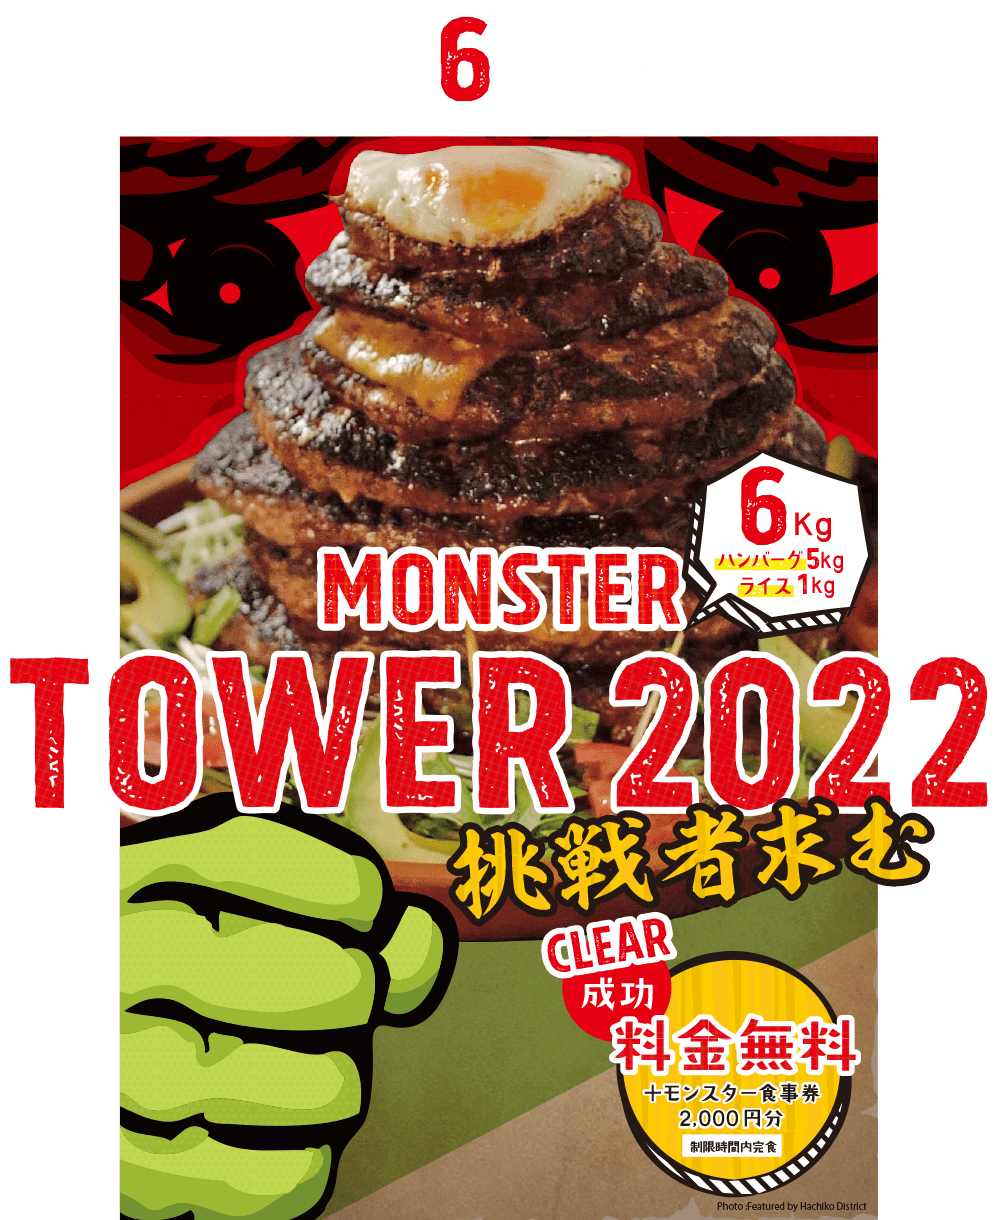 MONTER TOWER挑戦者求む（制限時間：35分）